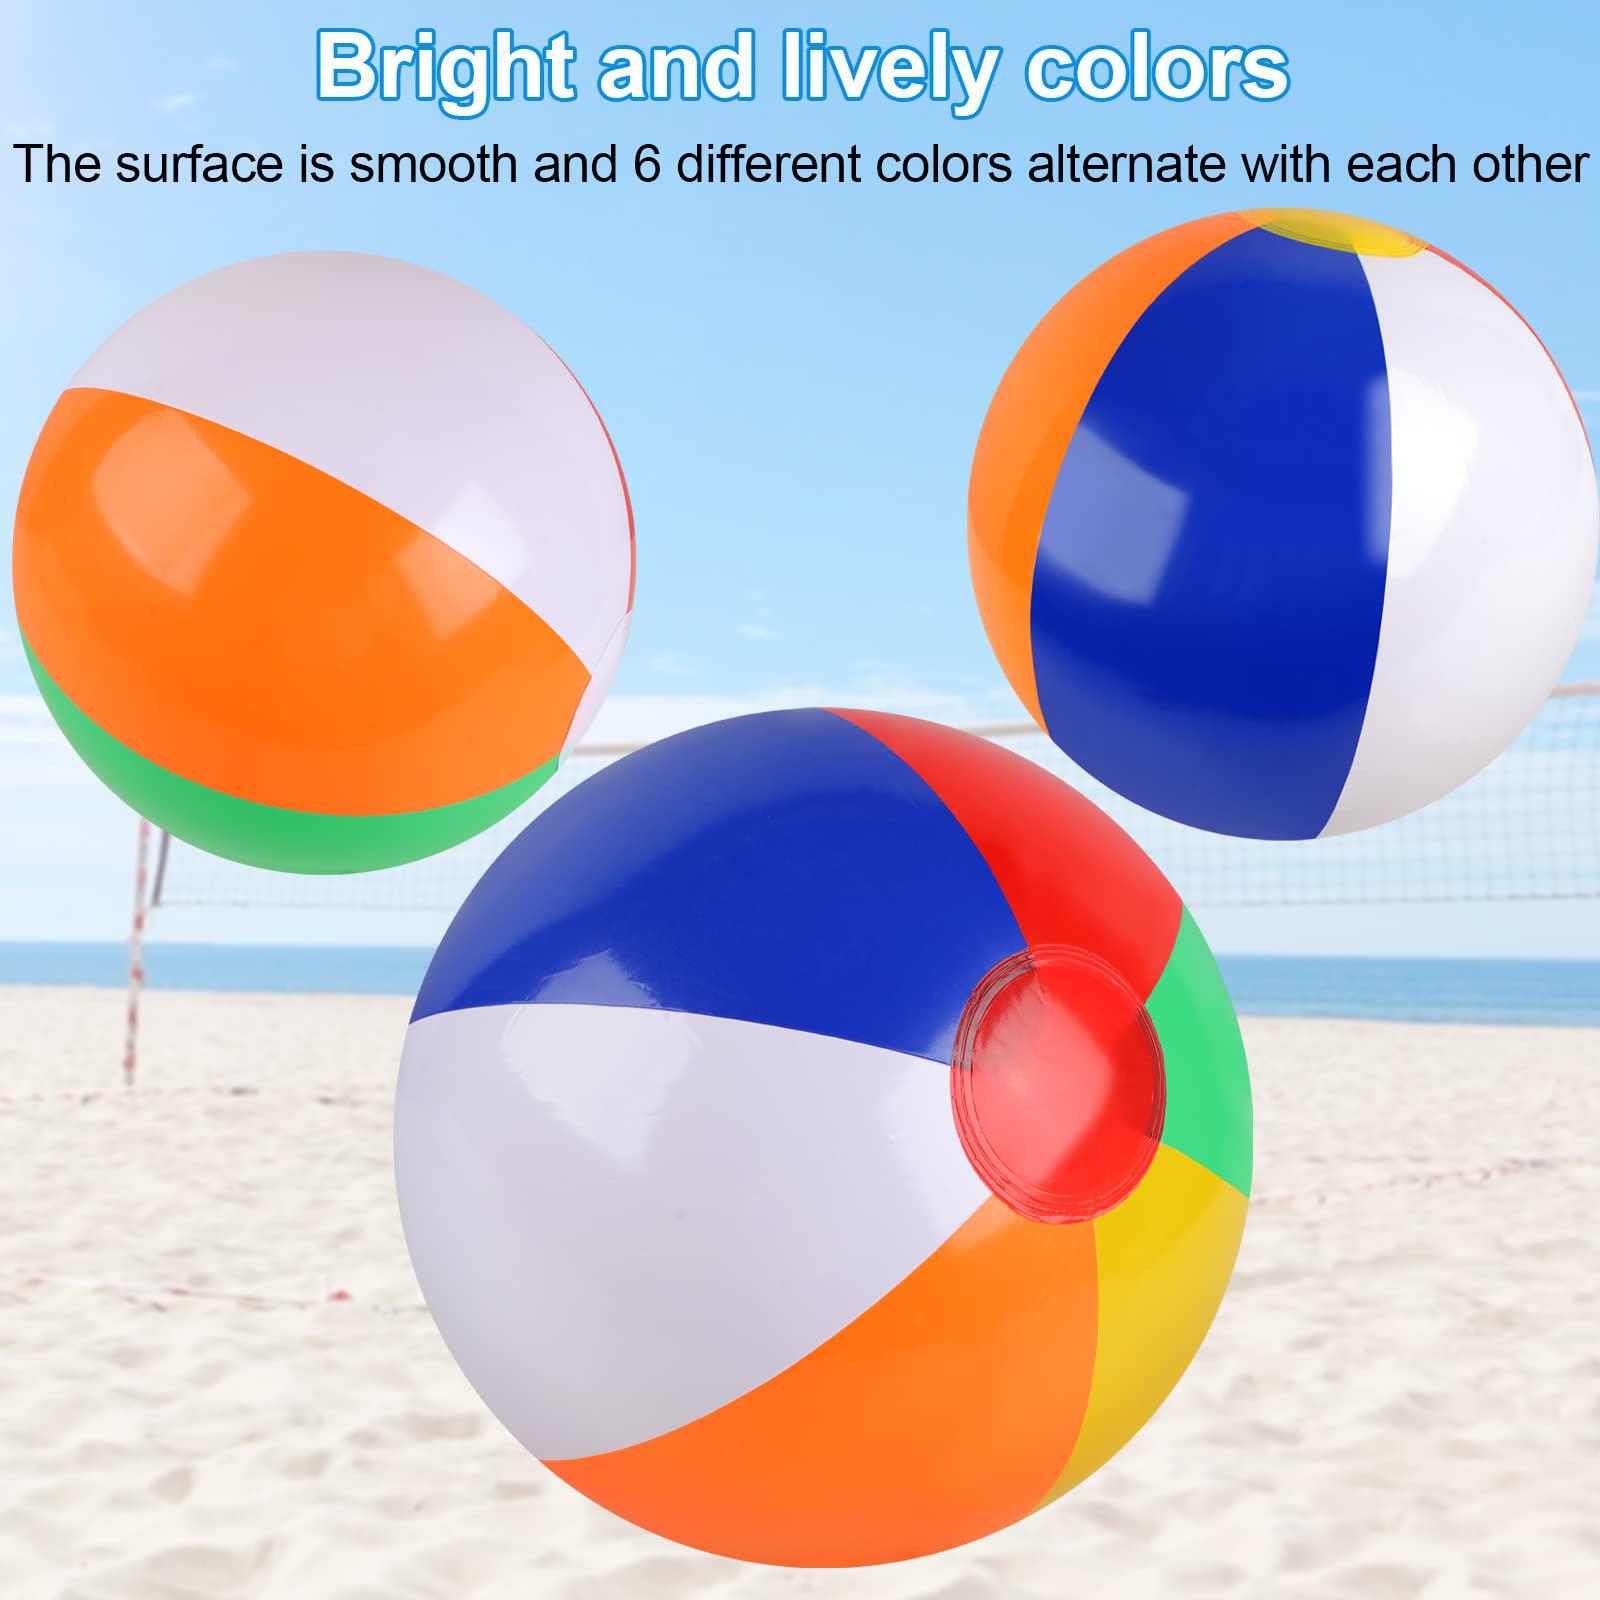 rindion 6 packs beach ball, pvc beach balls bulk, classic rainbow mini beach balls, diameter 10 outdoor sports beach balls for pool p